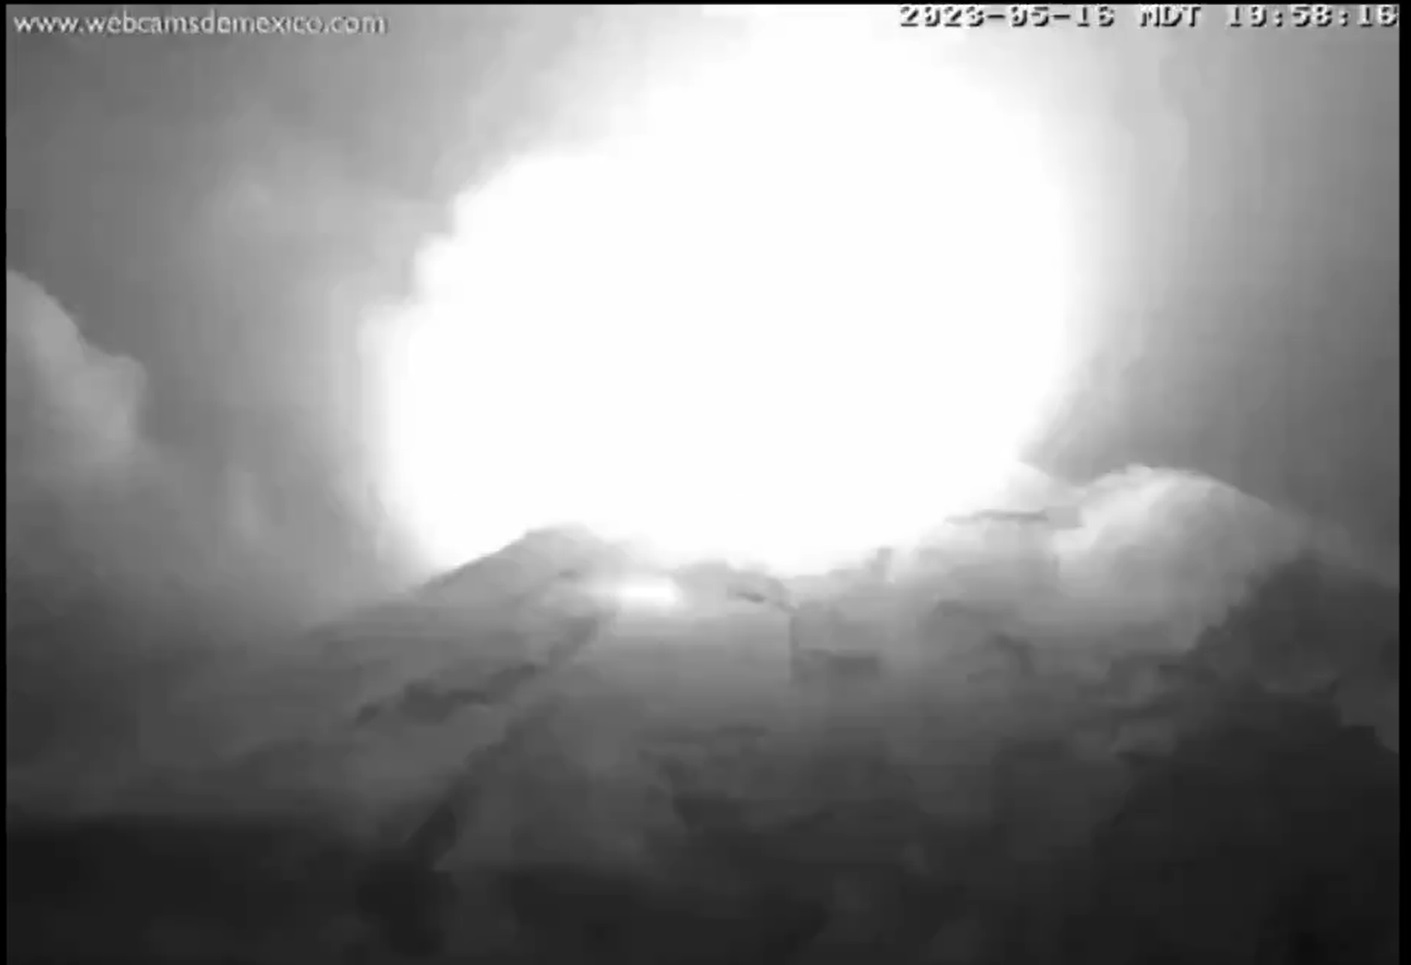 Así se vio la explosión del volcán Popocatépetl la noche del 16 de mayo (Twitter/ @webcamsdemexico)